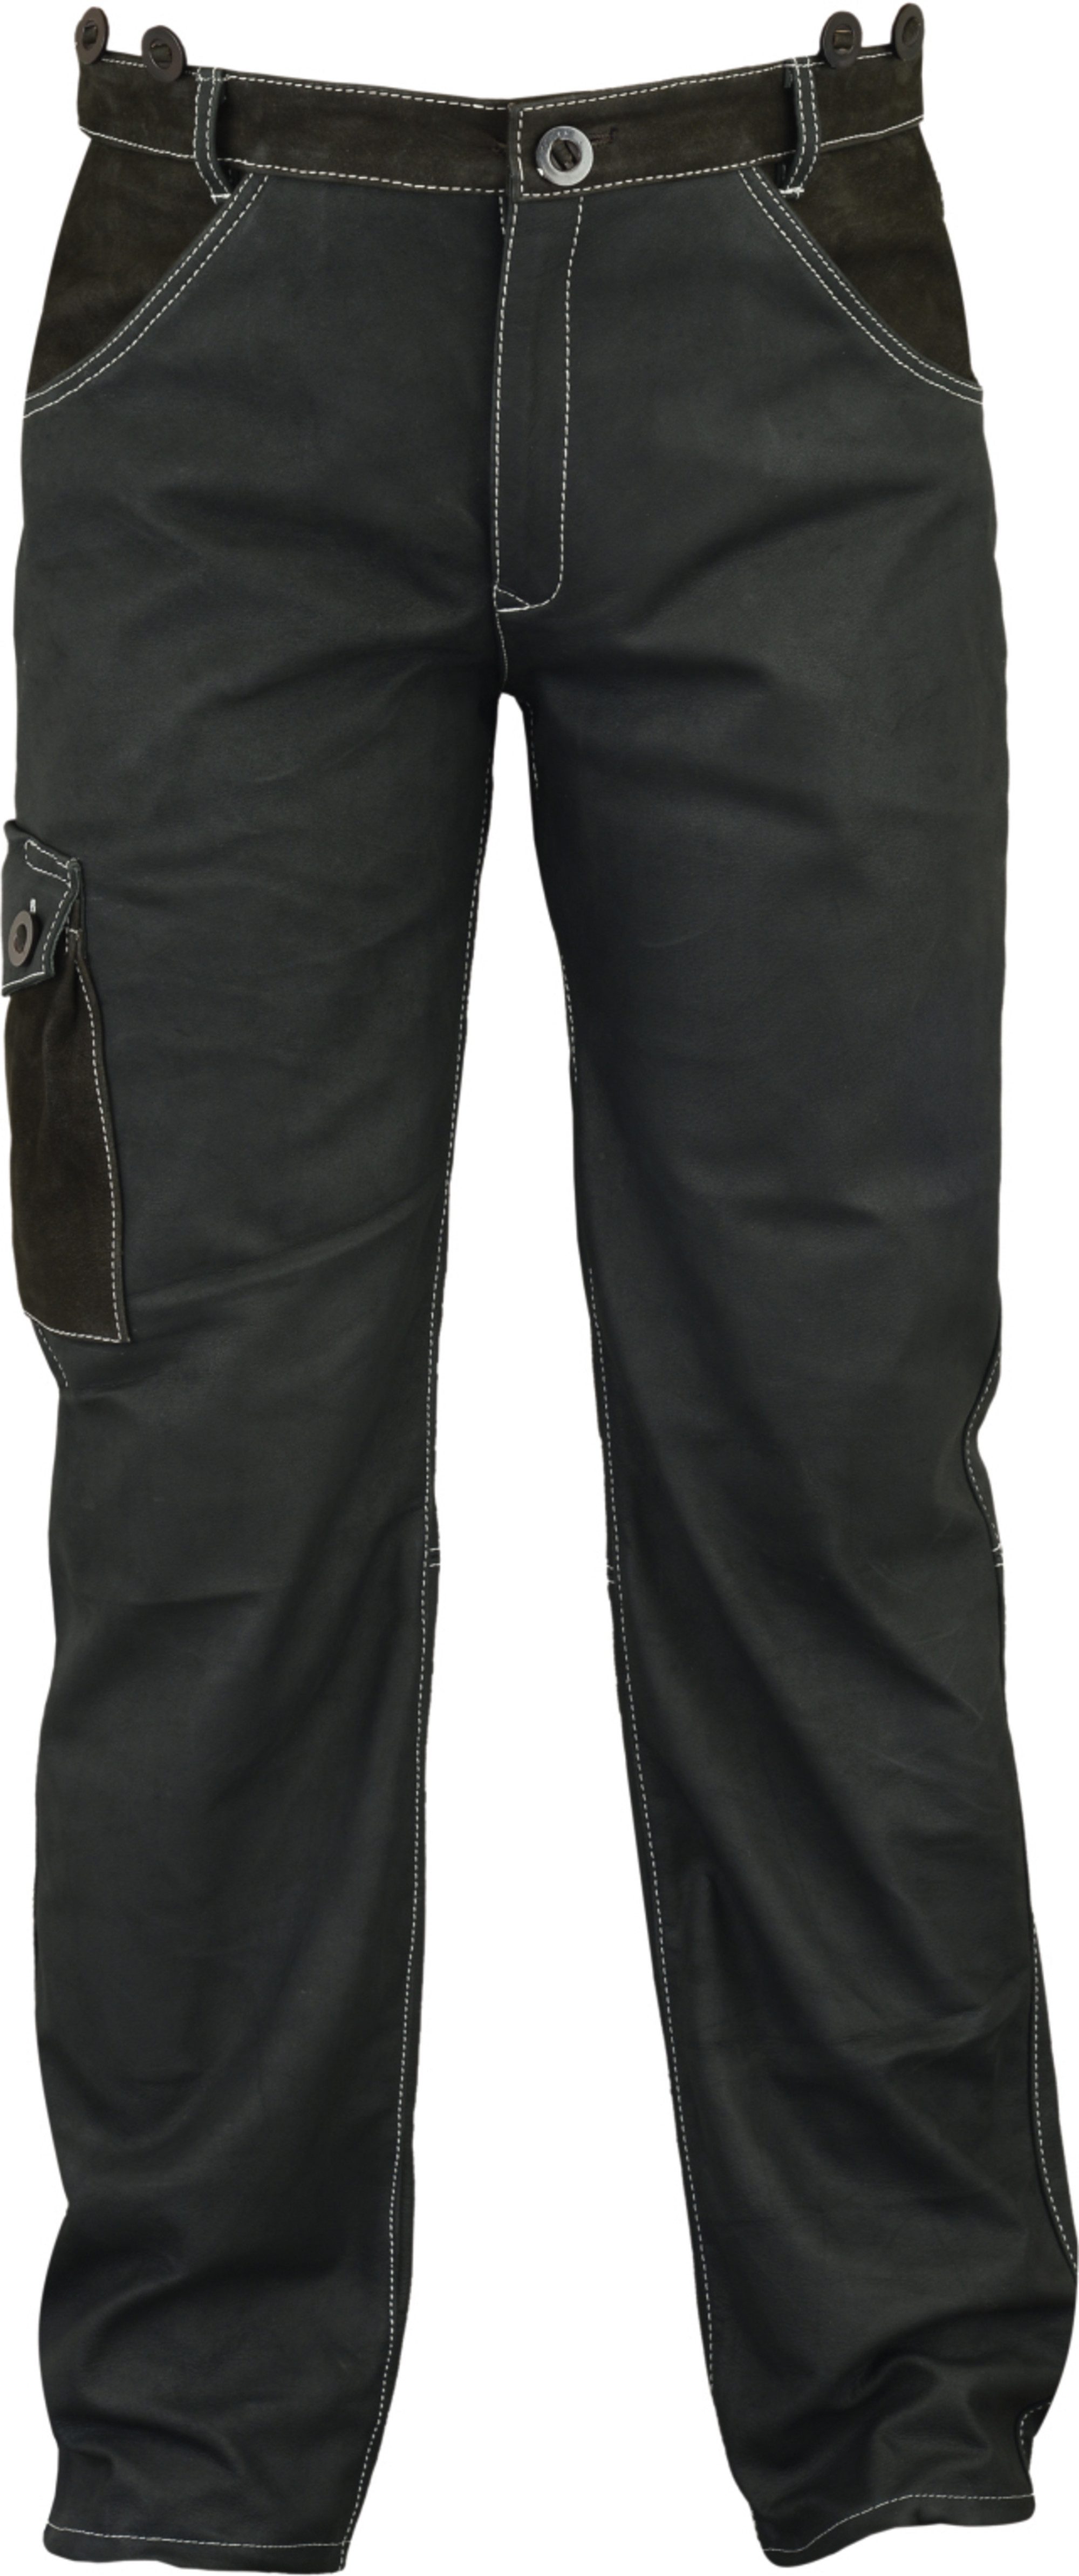 Fuente Leather Wears Bikerhose Lange Lederjeans Herren -5 Pocket Lederhose lang Nubuk Schwarz